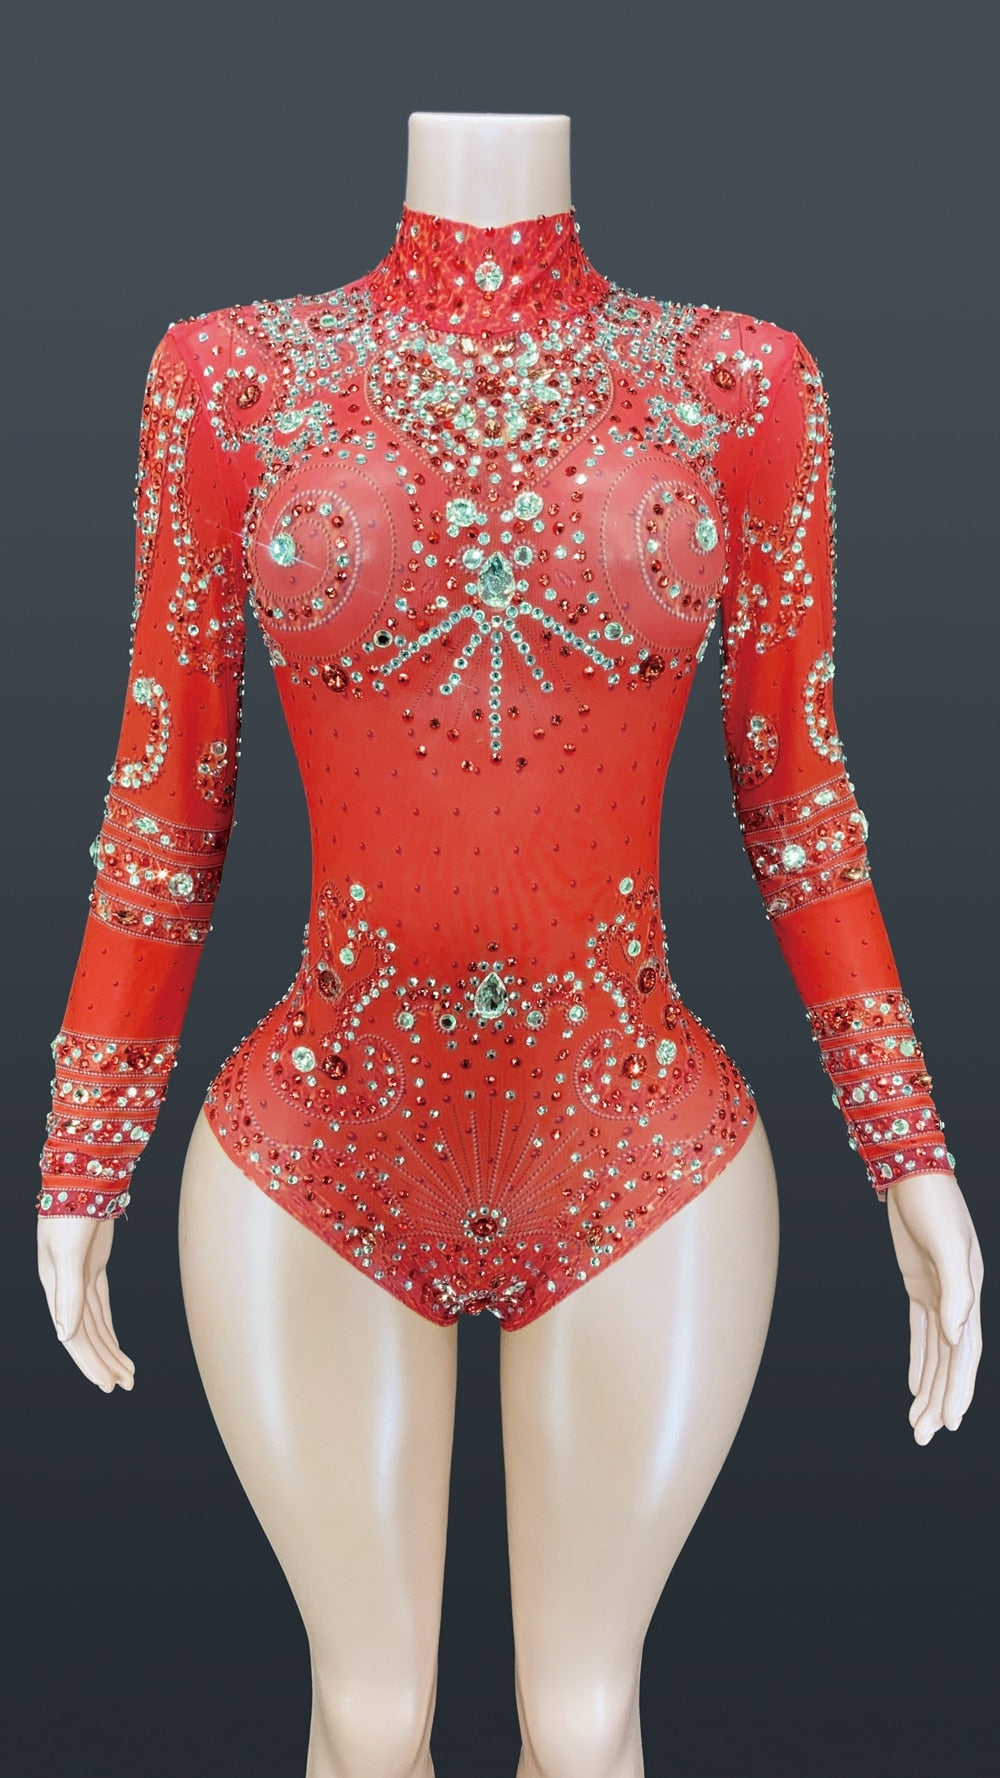 Queen Noel Sparkly Transparent Bodysuit